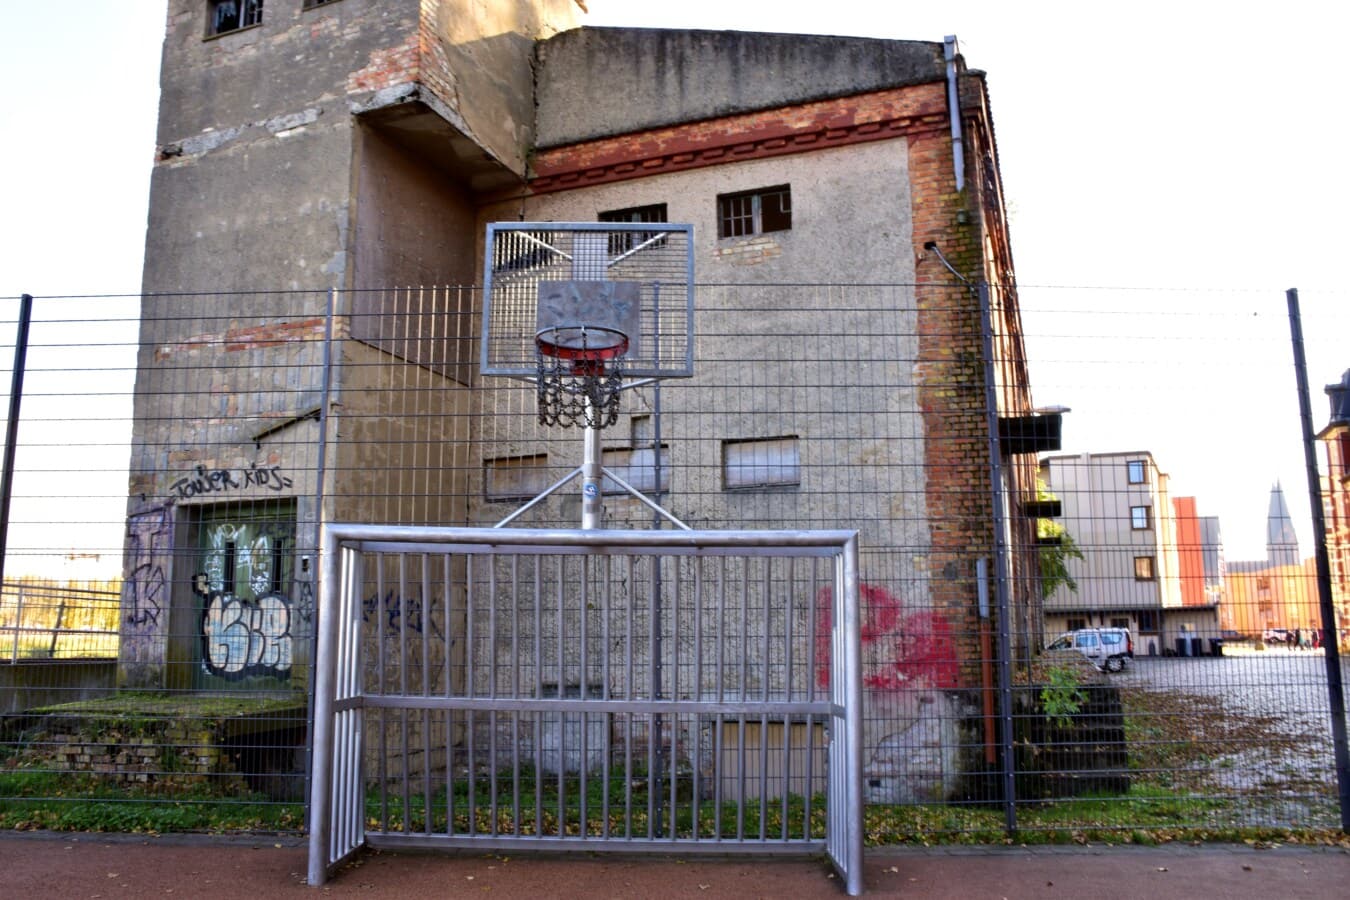 terrain de basket, zone urbaine, abandonné, carie, rue, industriel, remise en conformité, architecture, vieux, Graffiti